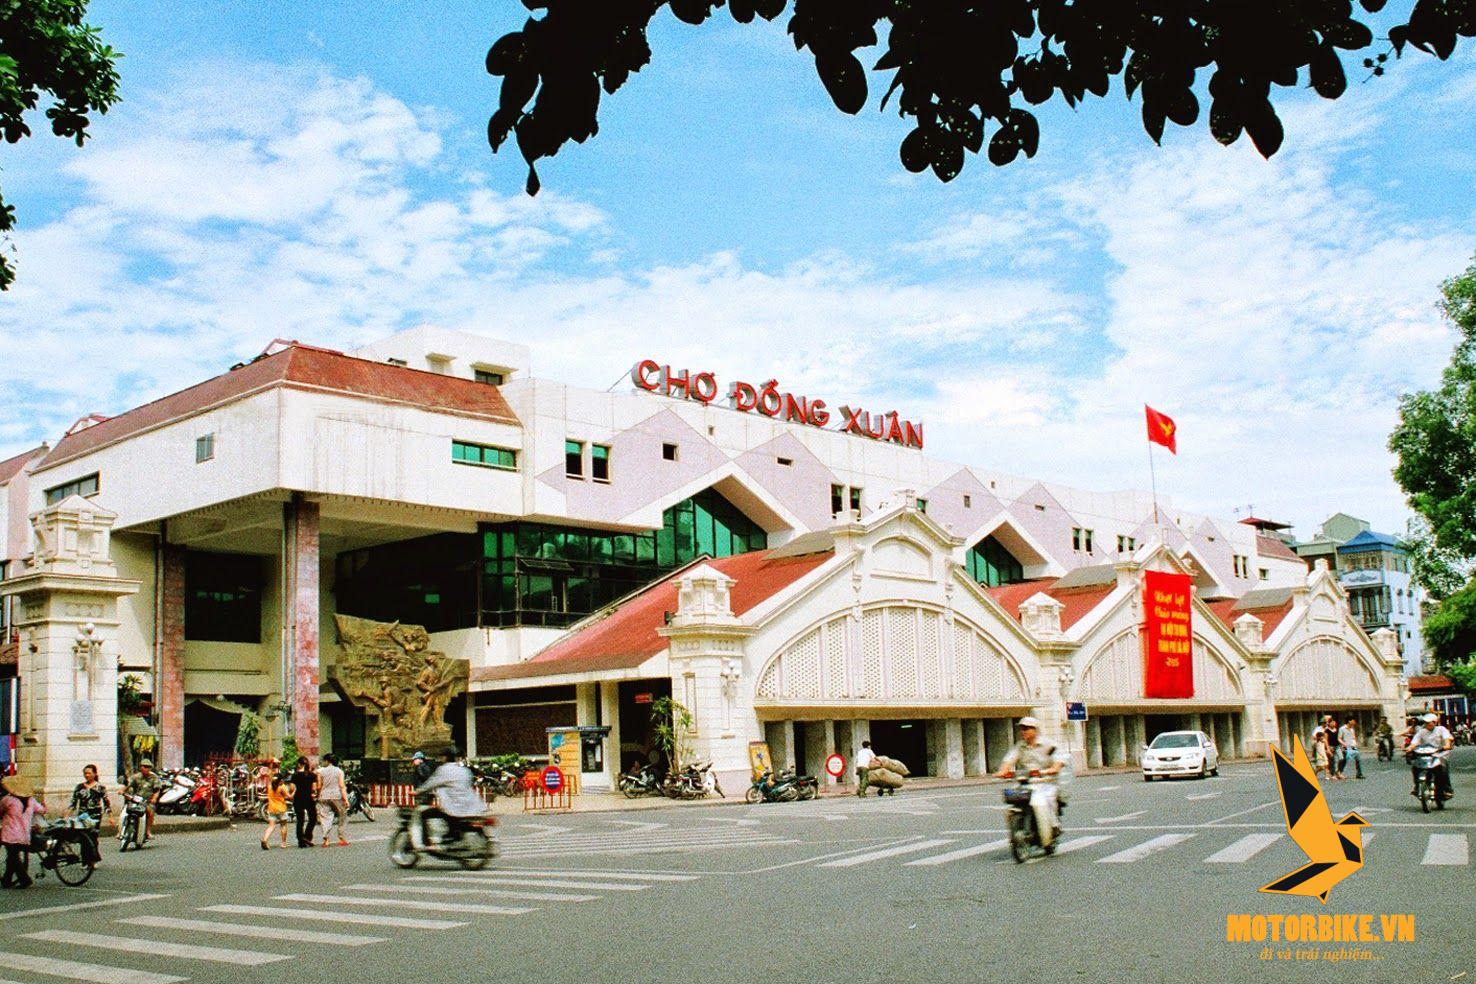 Thuê xe máy phố cổ Hà Nội - Chợ Đồng Xuân